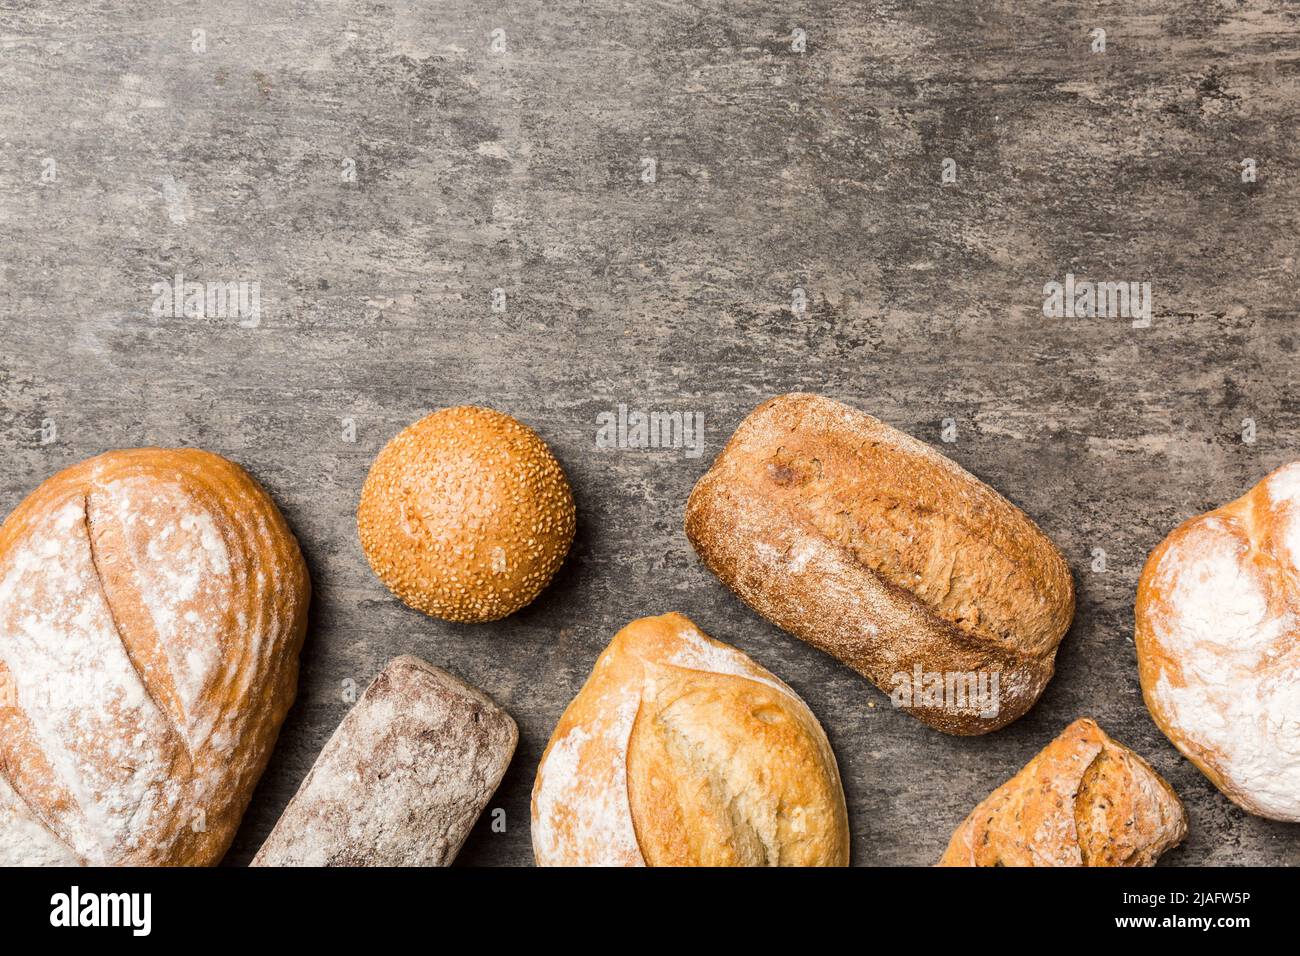 Pane naturale fatto in casa. Diversi tipi di pane fresco come